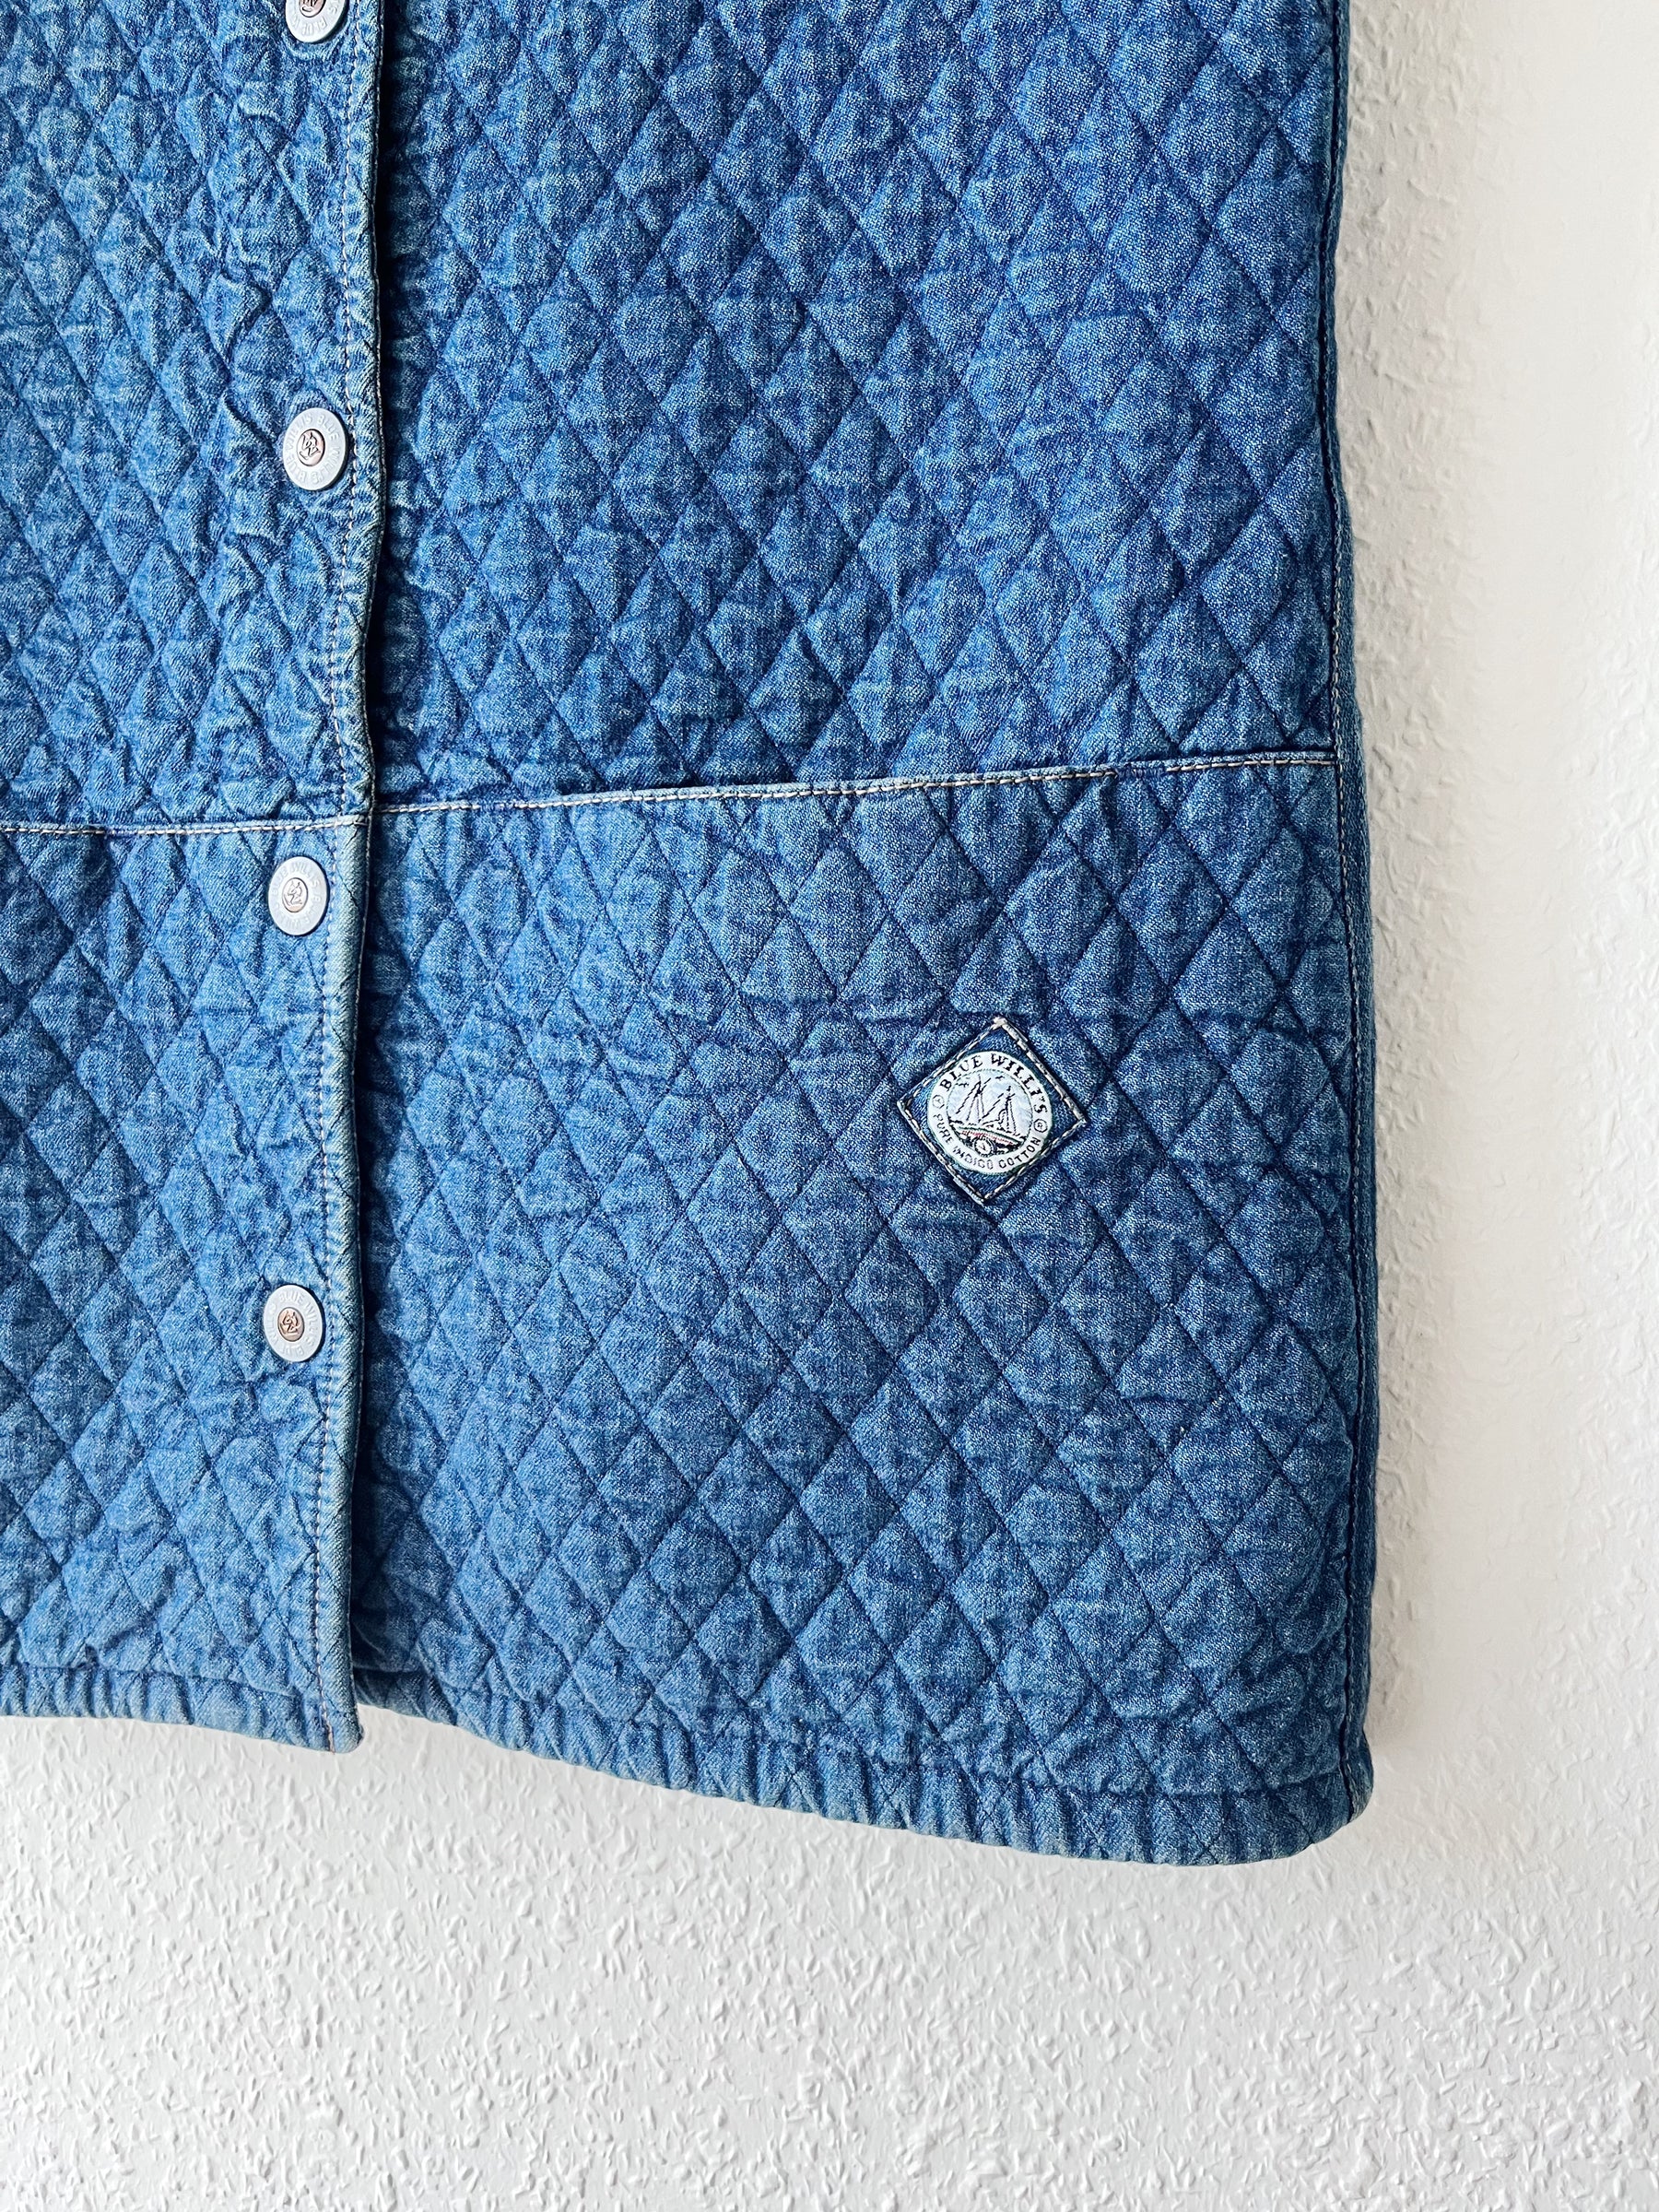 Blue Willi's vintage vest